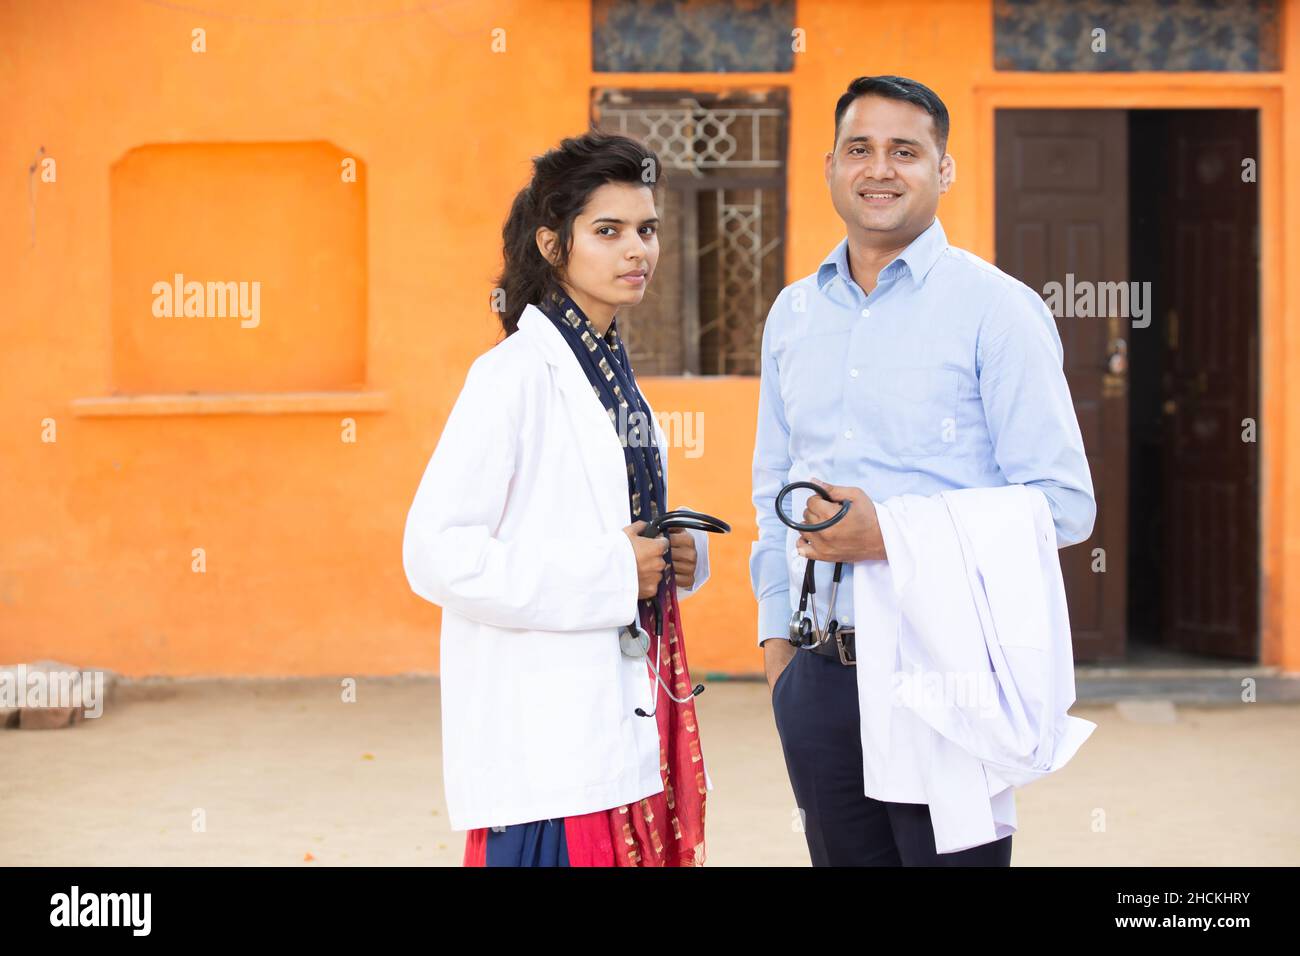 Ritratto di giovane uomo indiano sorridente e femmina Dottore tenuta stetoscopio in piedi guardando la macchina fotografica con emozioni positive contro backgroun arancione Foto Stock